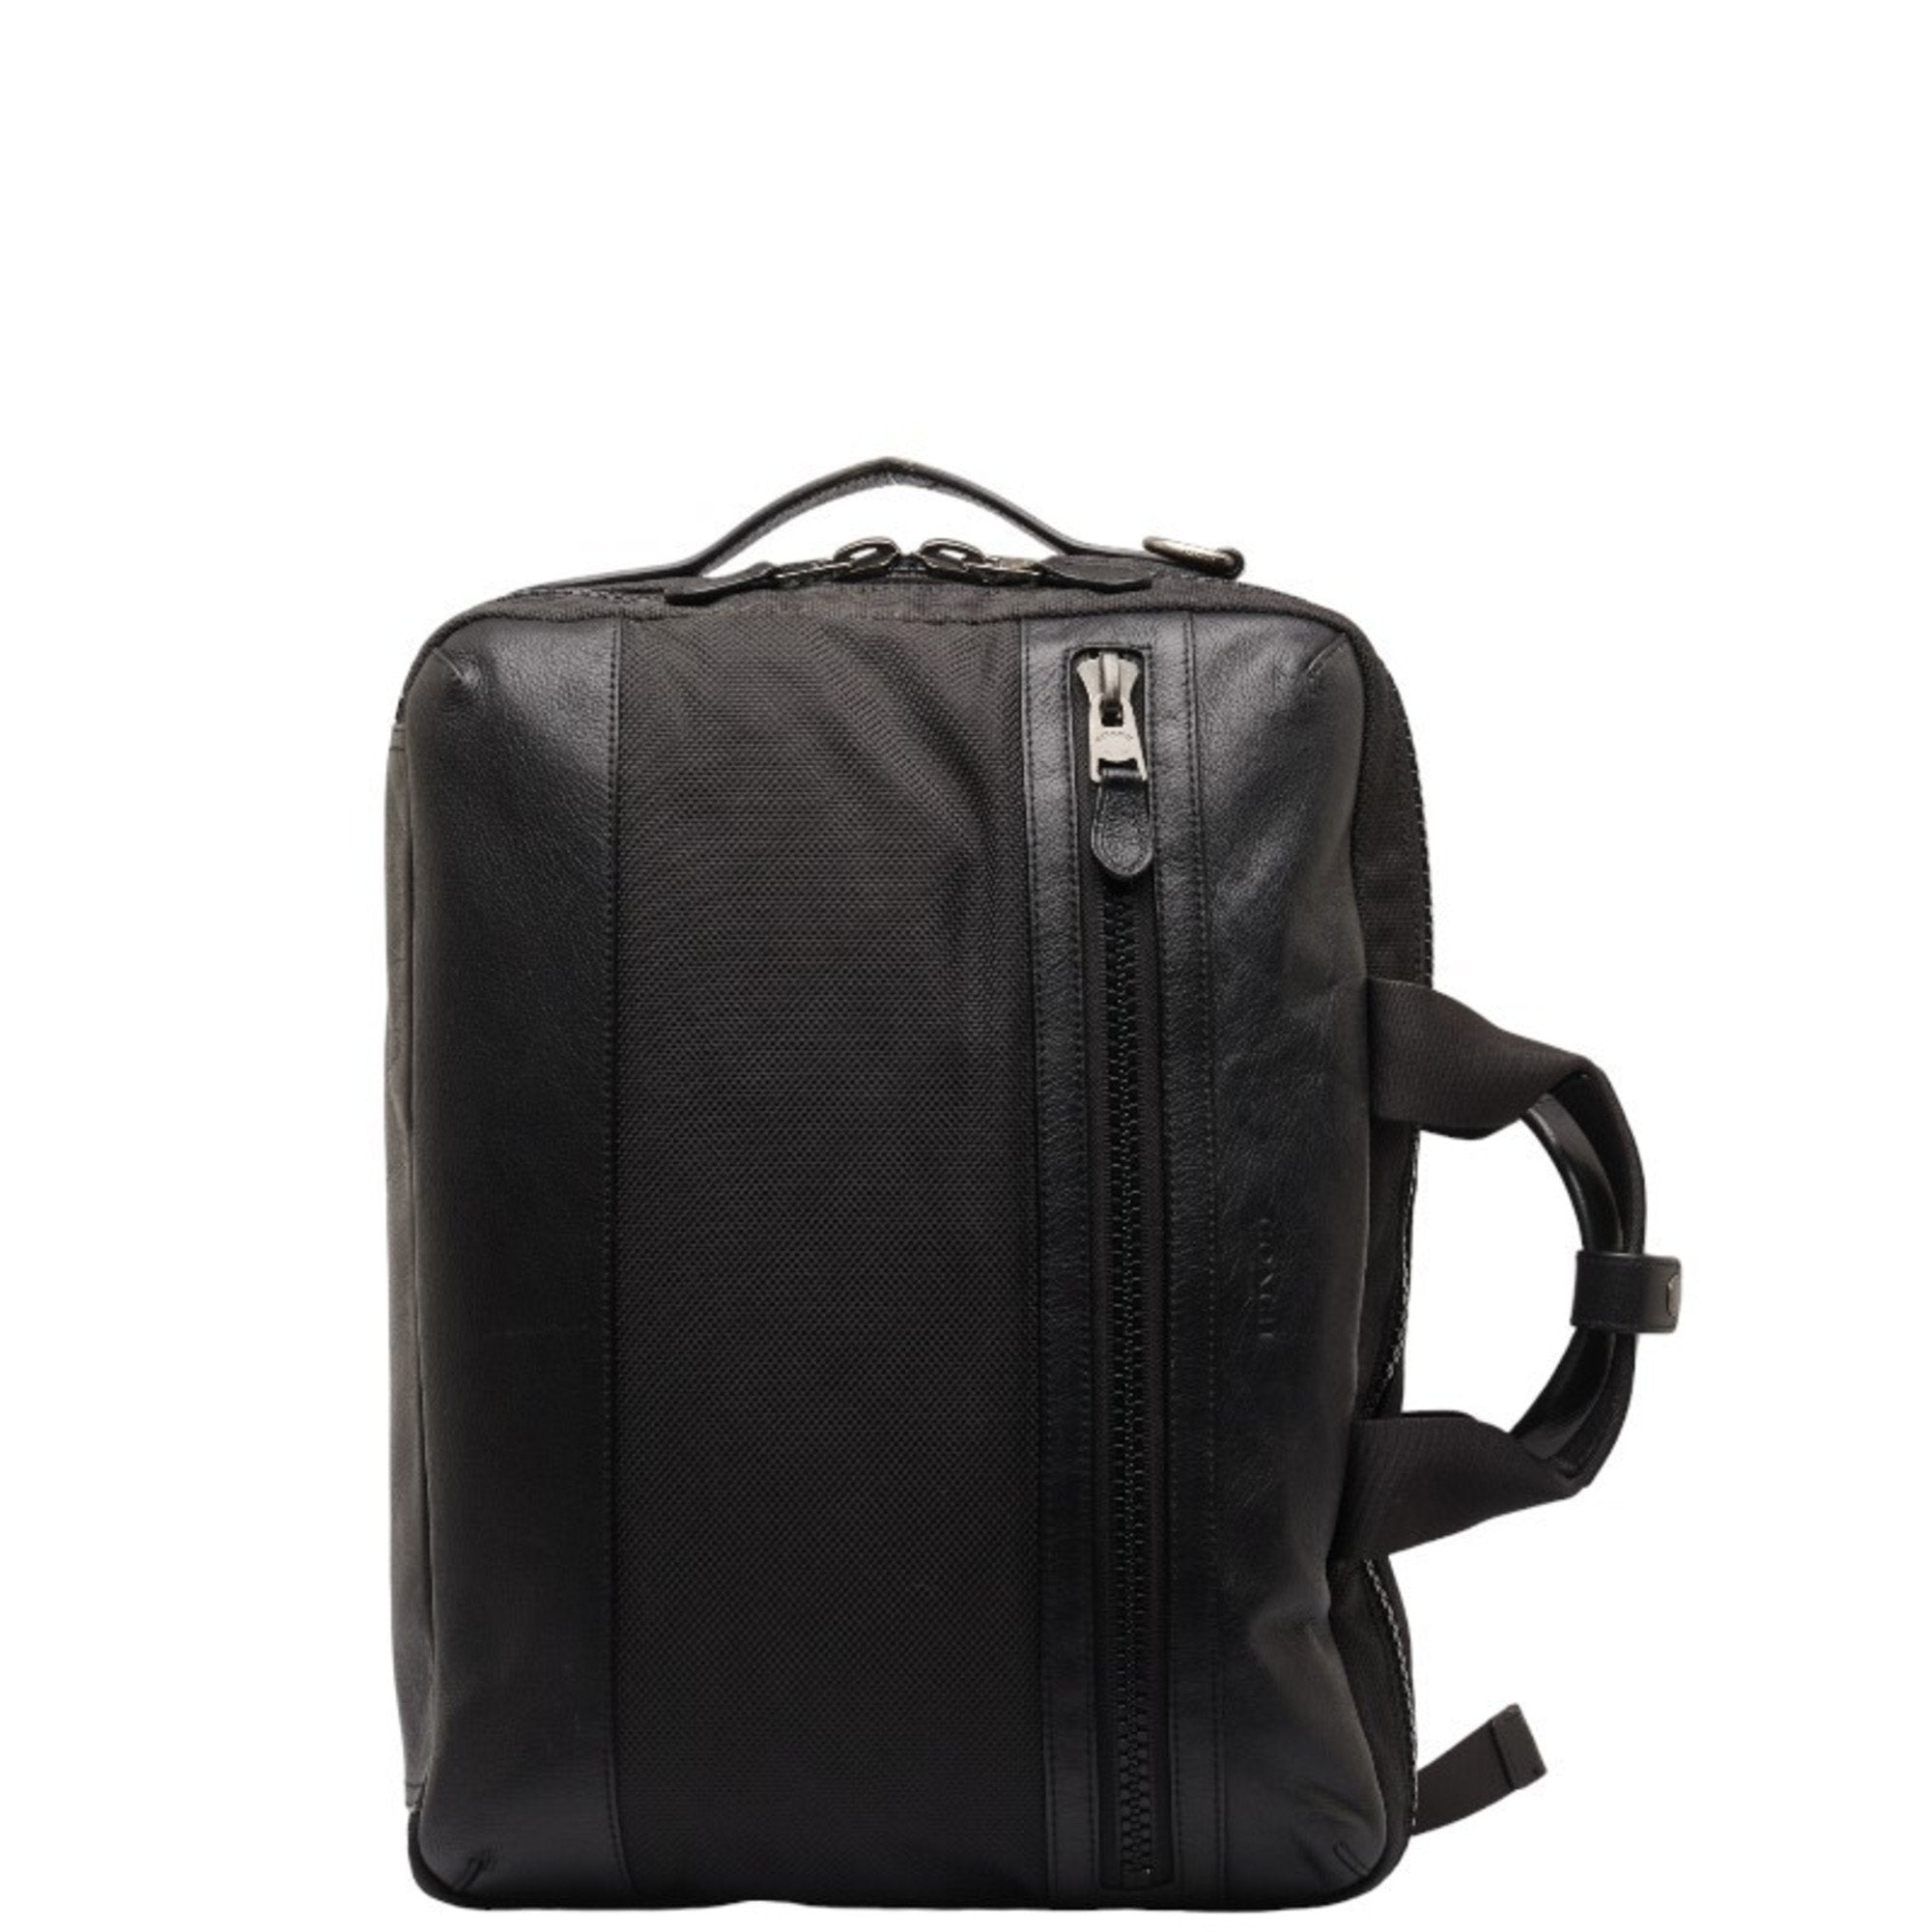 Terrain Handbag Backpack Shoulder Bag 3WAY F59944 Black Canvas Leather Men's